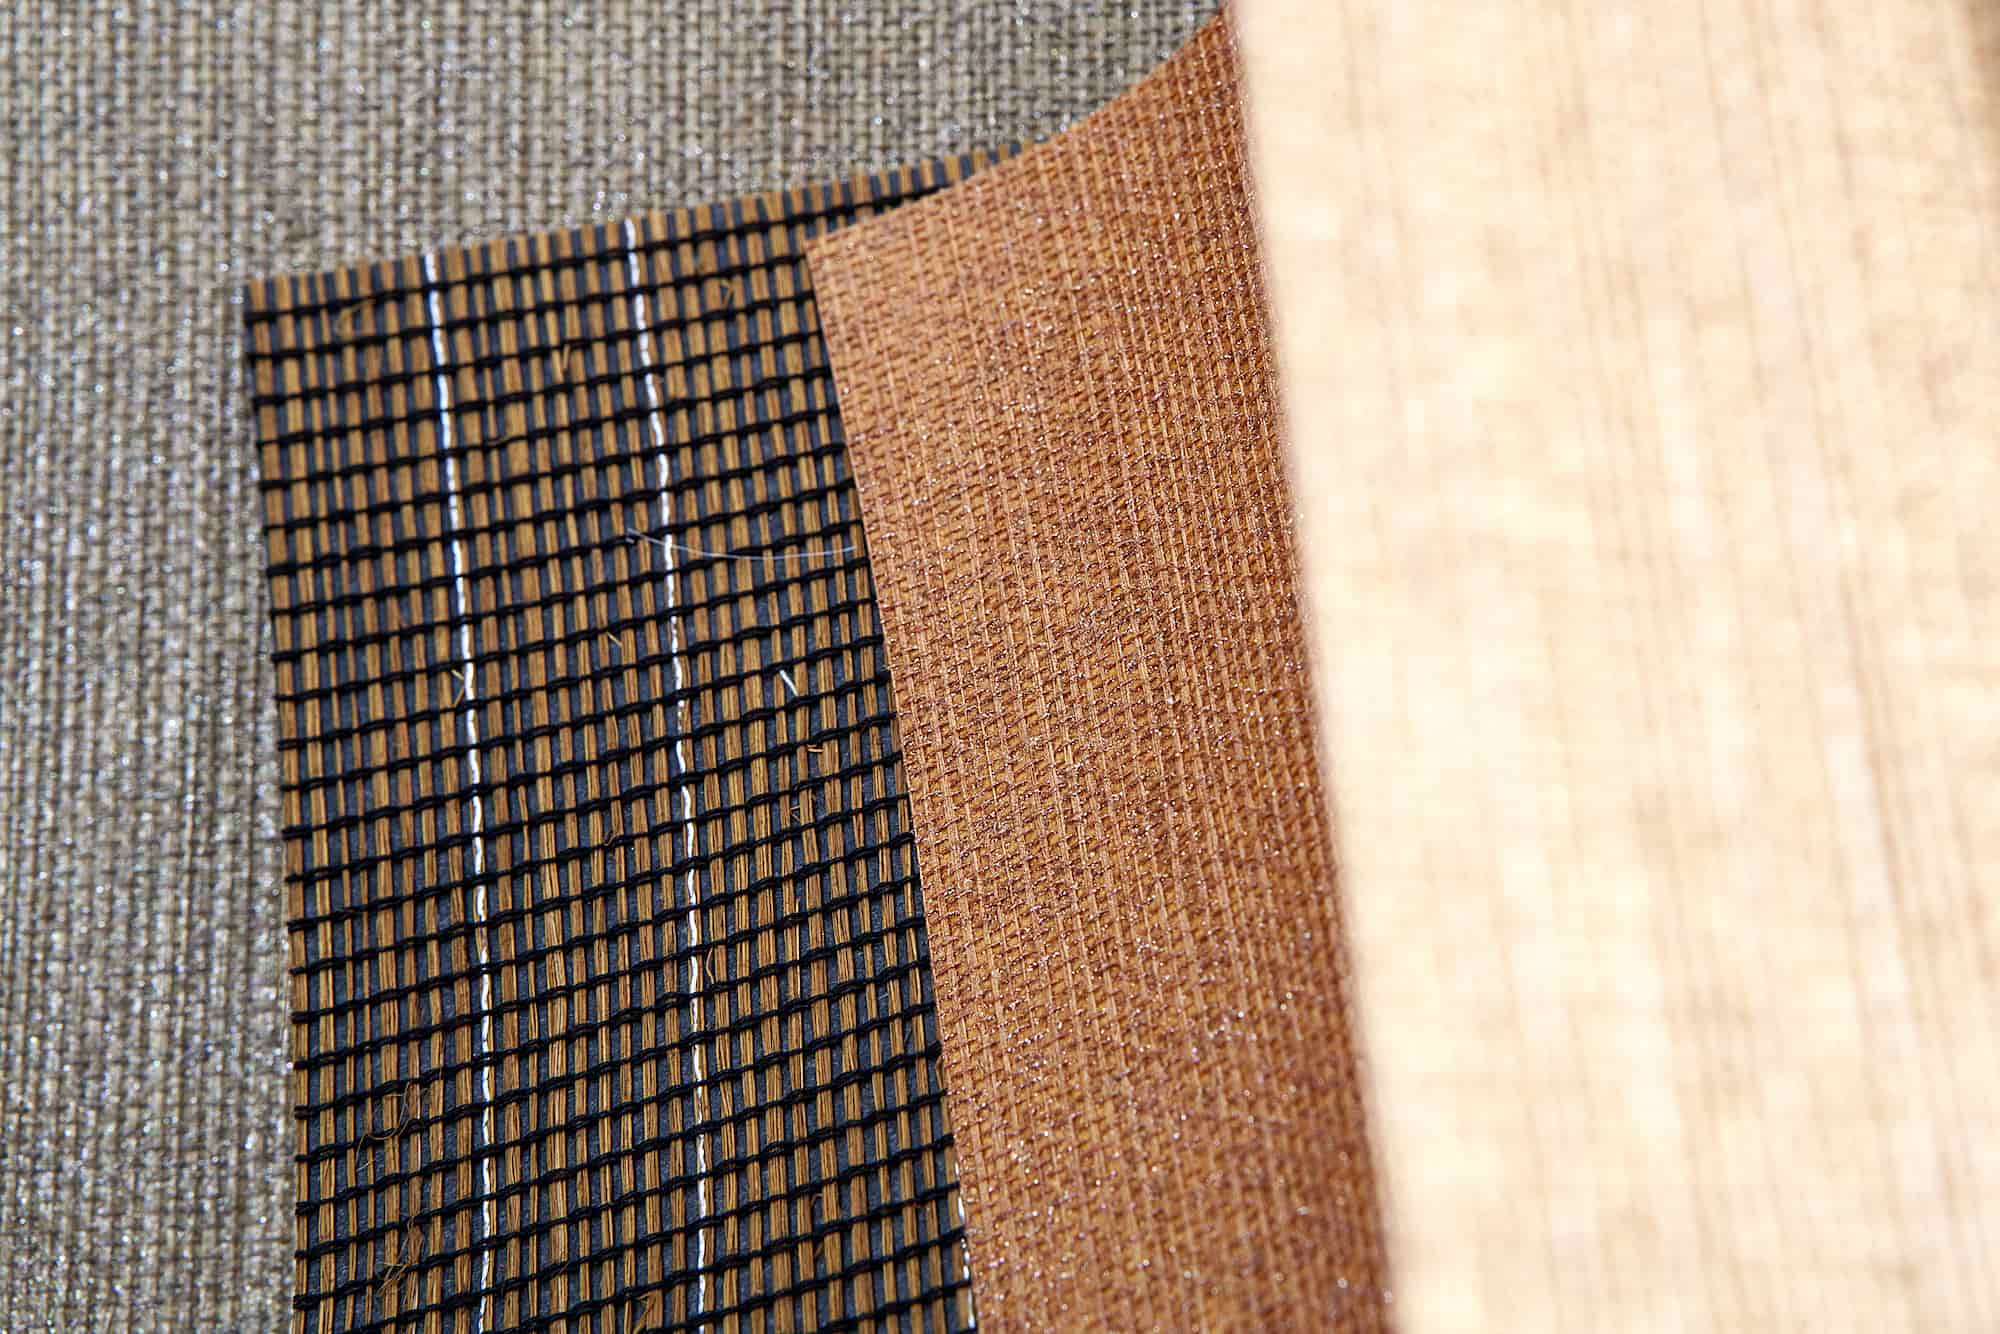 壁布表面大多為麻、毛、絲、布、玻璃纖維......等材質